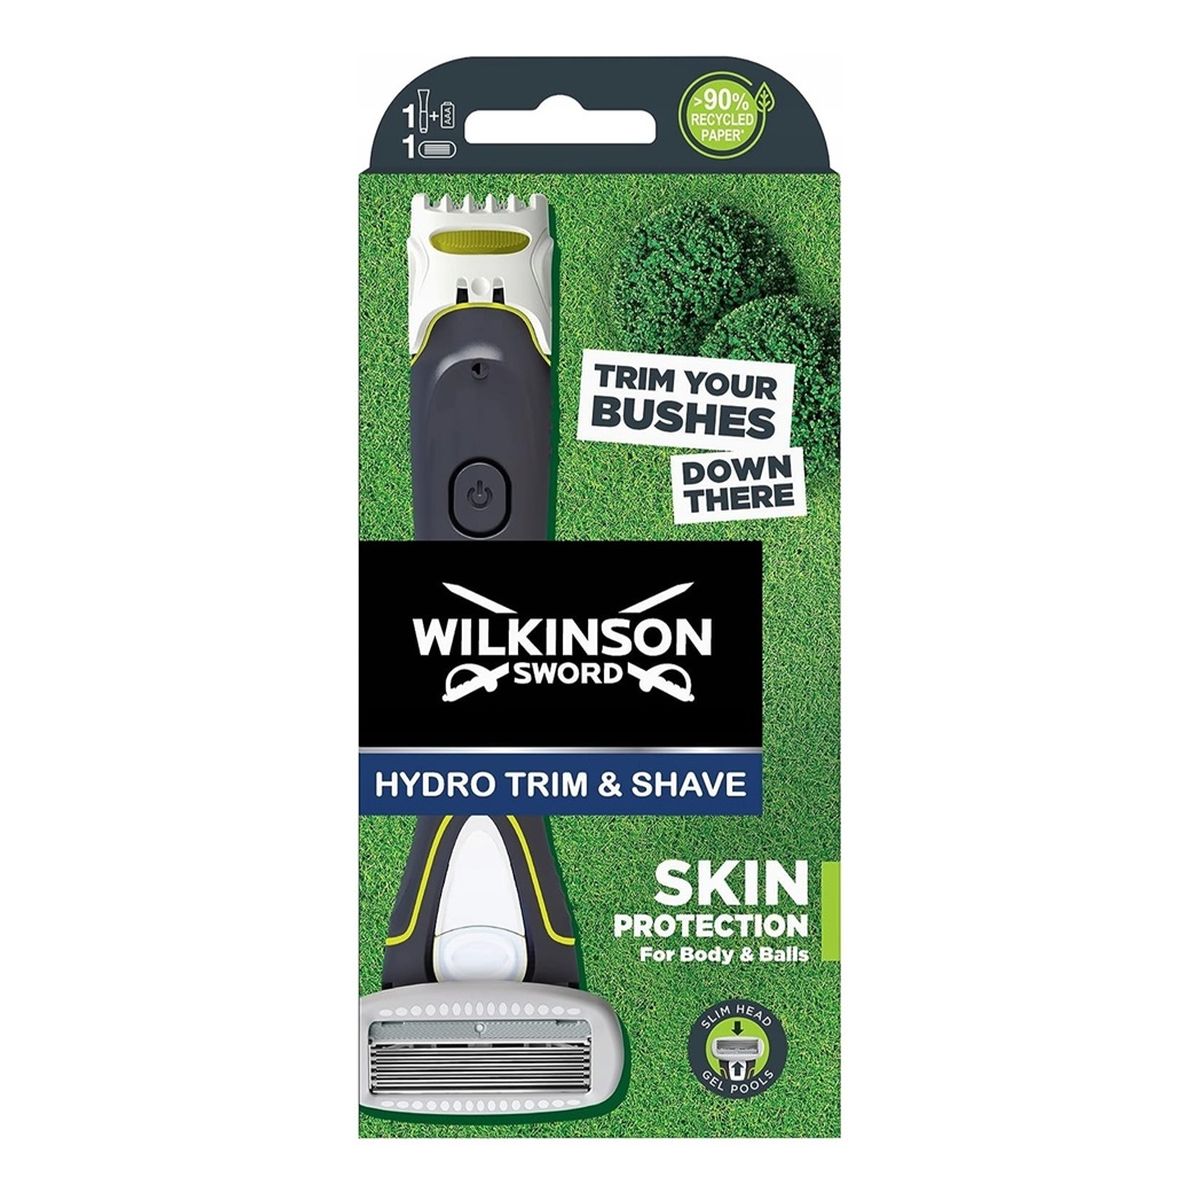 Wilkinson Hydro trim shave maszynka do golenia i trymer 1szt.